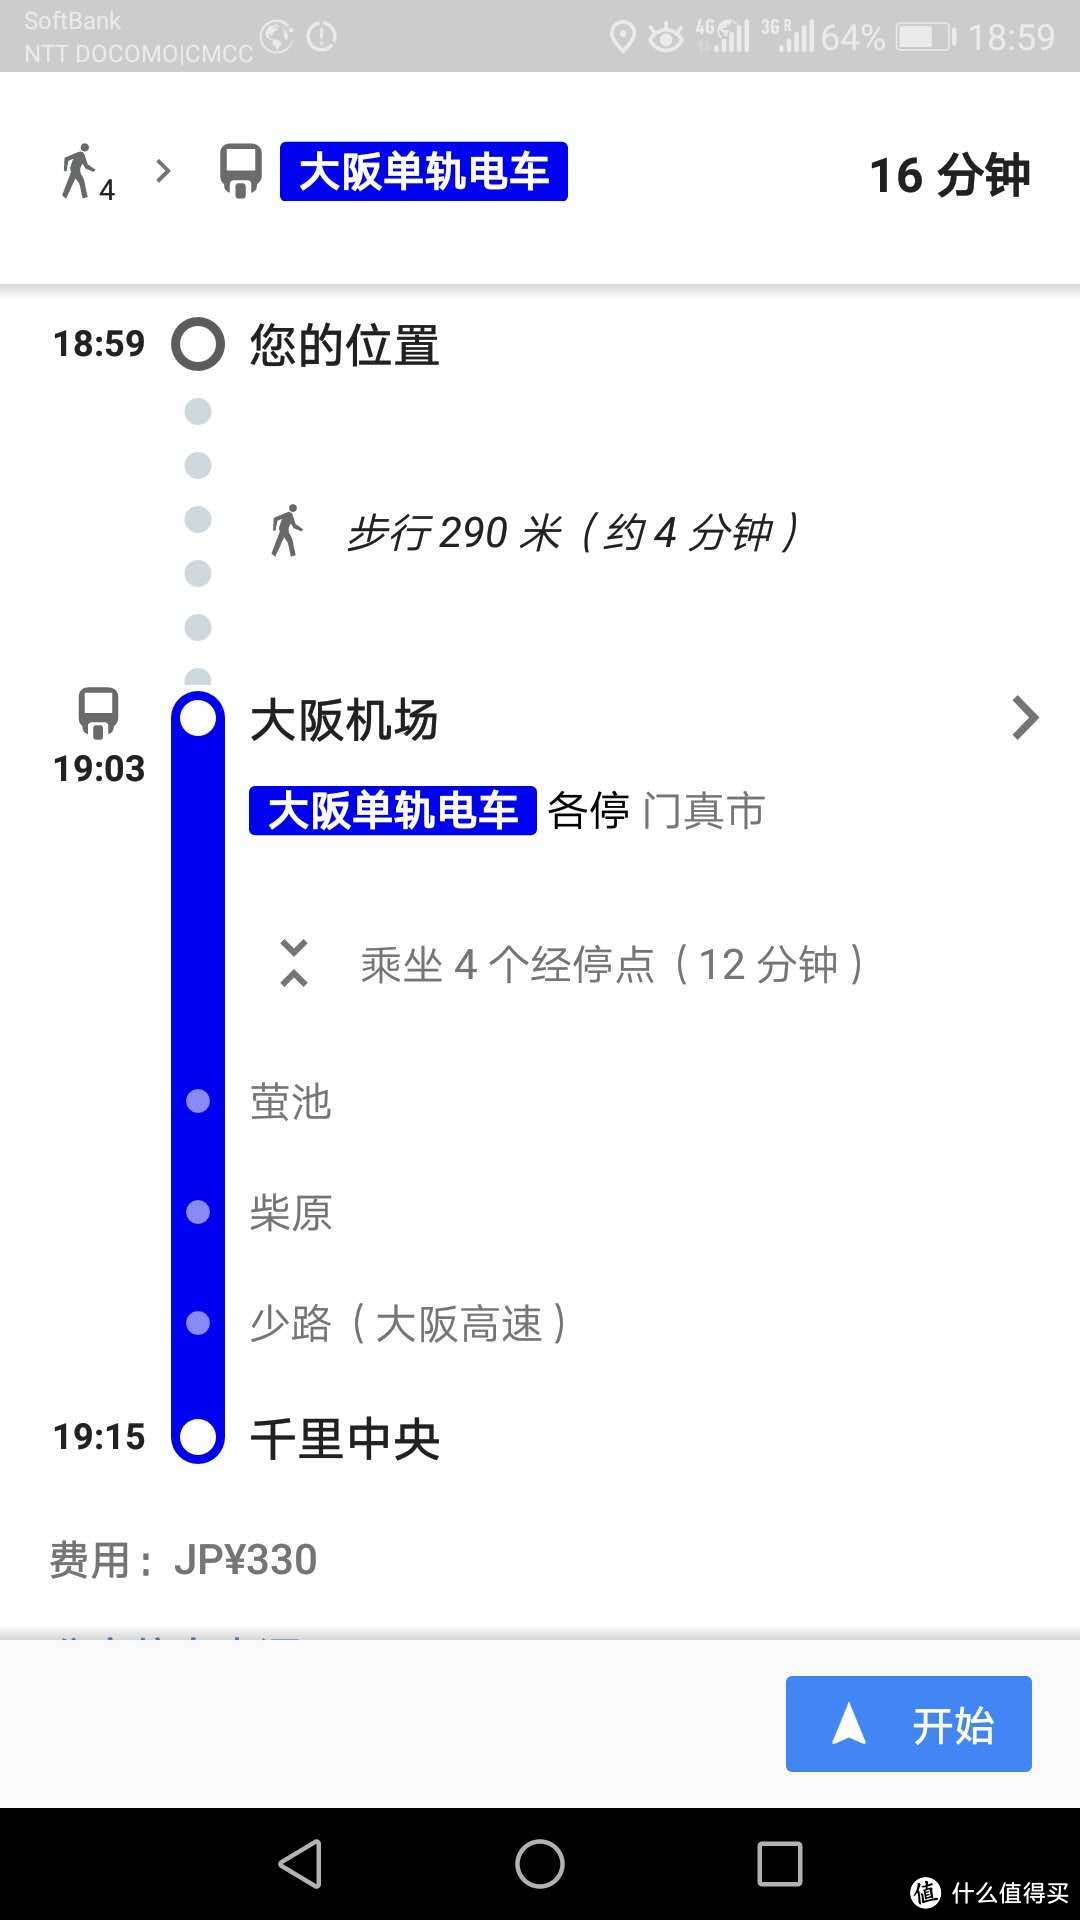 先坐大阪单轨电车到千里中央站